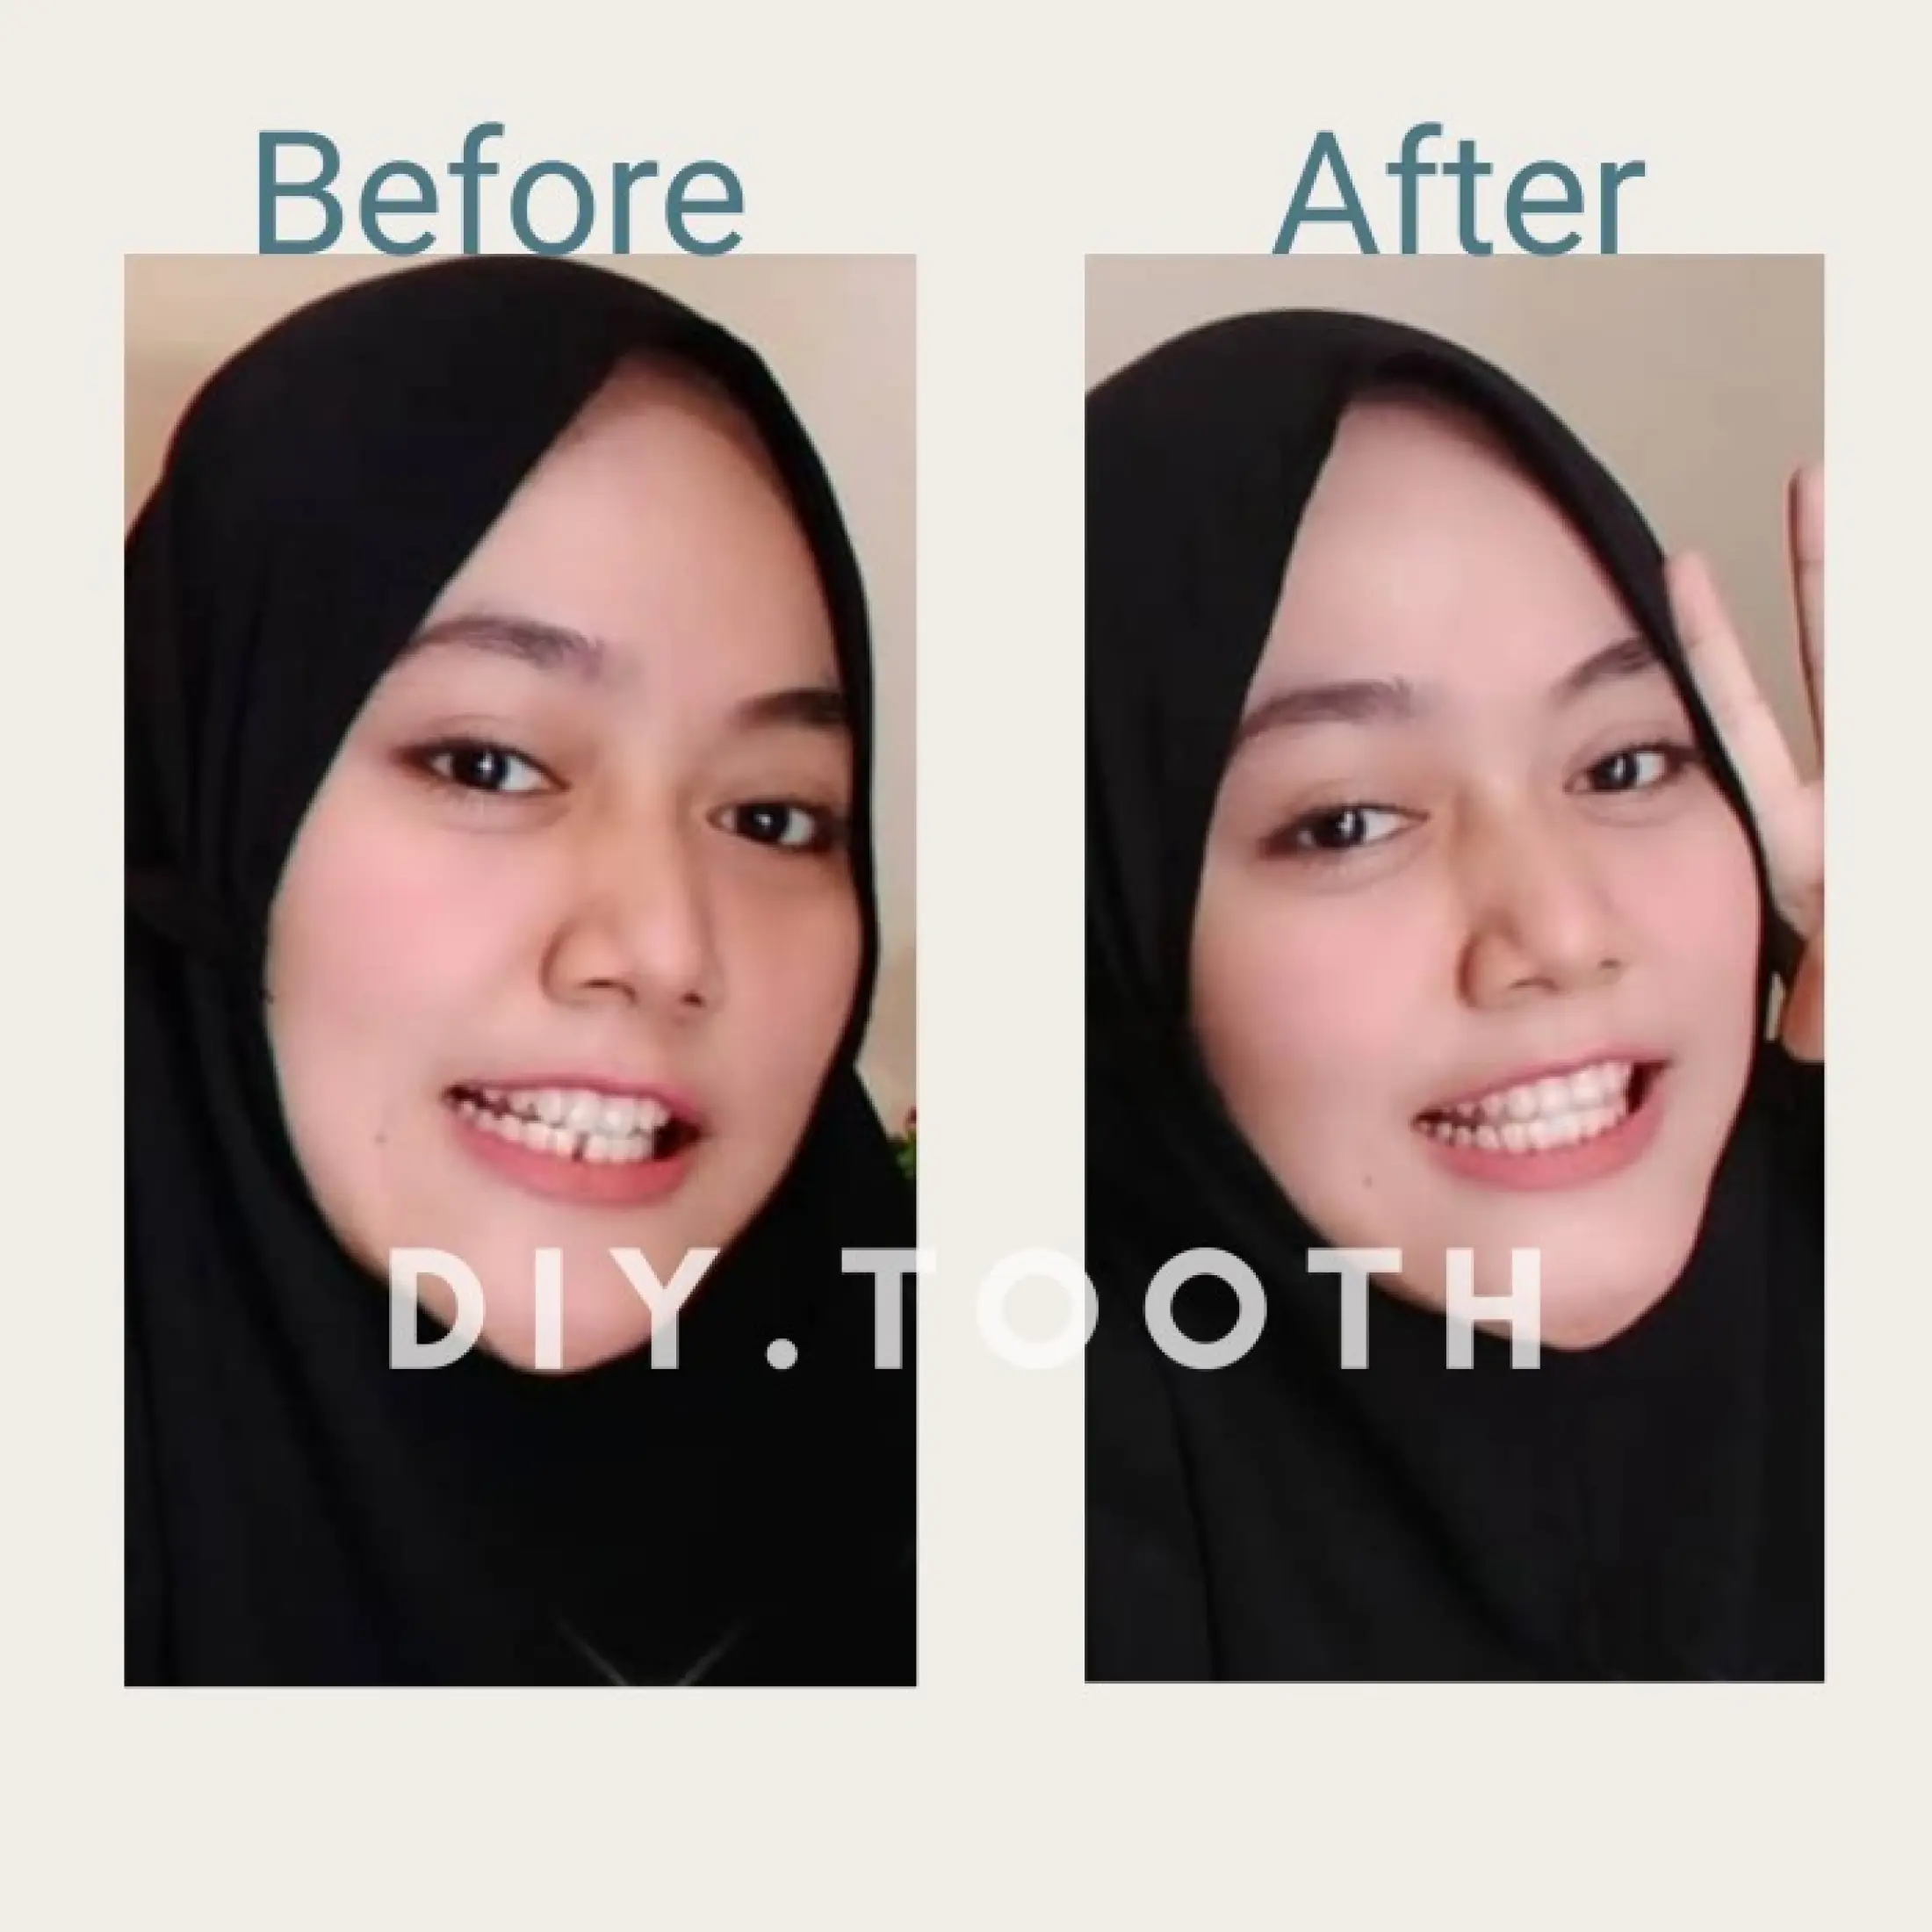 Terlaris Sedang Diskon Gigi Palsu Temptooth Temporary Tooth Lem Tambal Gigi Instan Kuat Untuk Memperbaiki Gigi Berlubang Ompong Patah Gigi Renggang Bisa Bentuk Gigi Kelinci Bisa Cod Lazada Indonesia